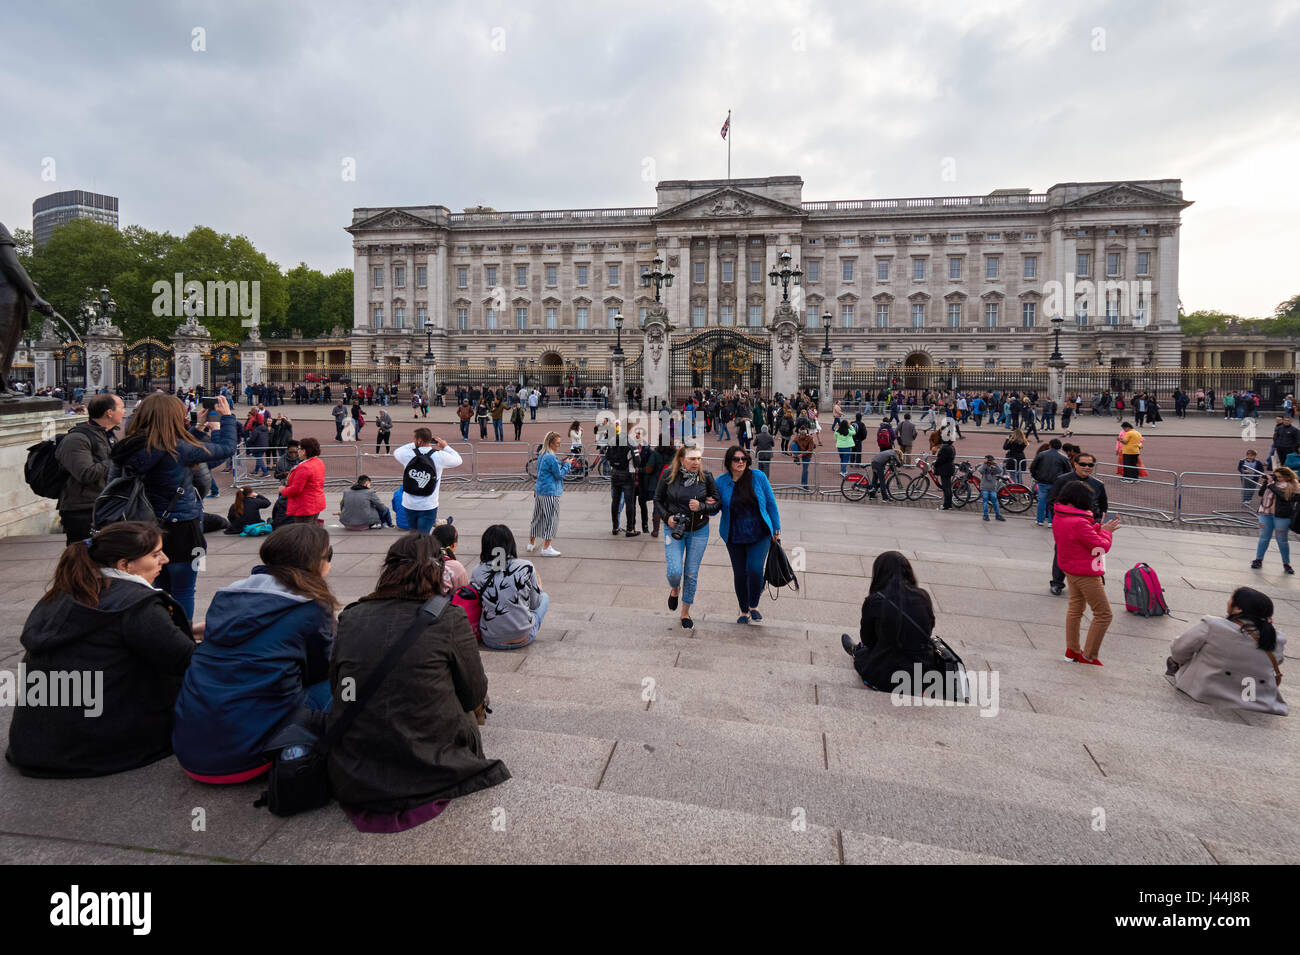 Les touristes devant le palais de Buckingham à Londres, Angleterre Royaume-Uni UK Banque D'Images